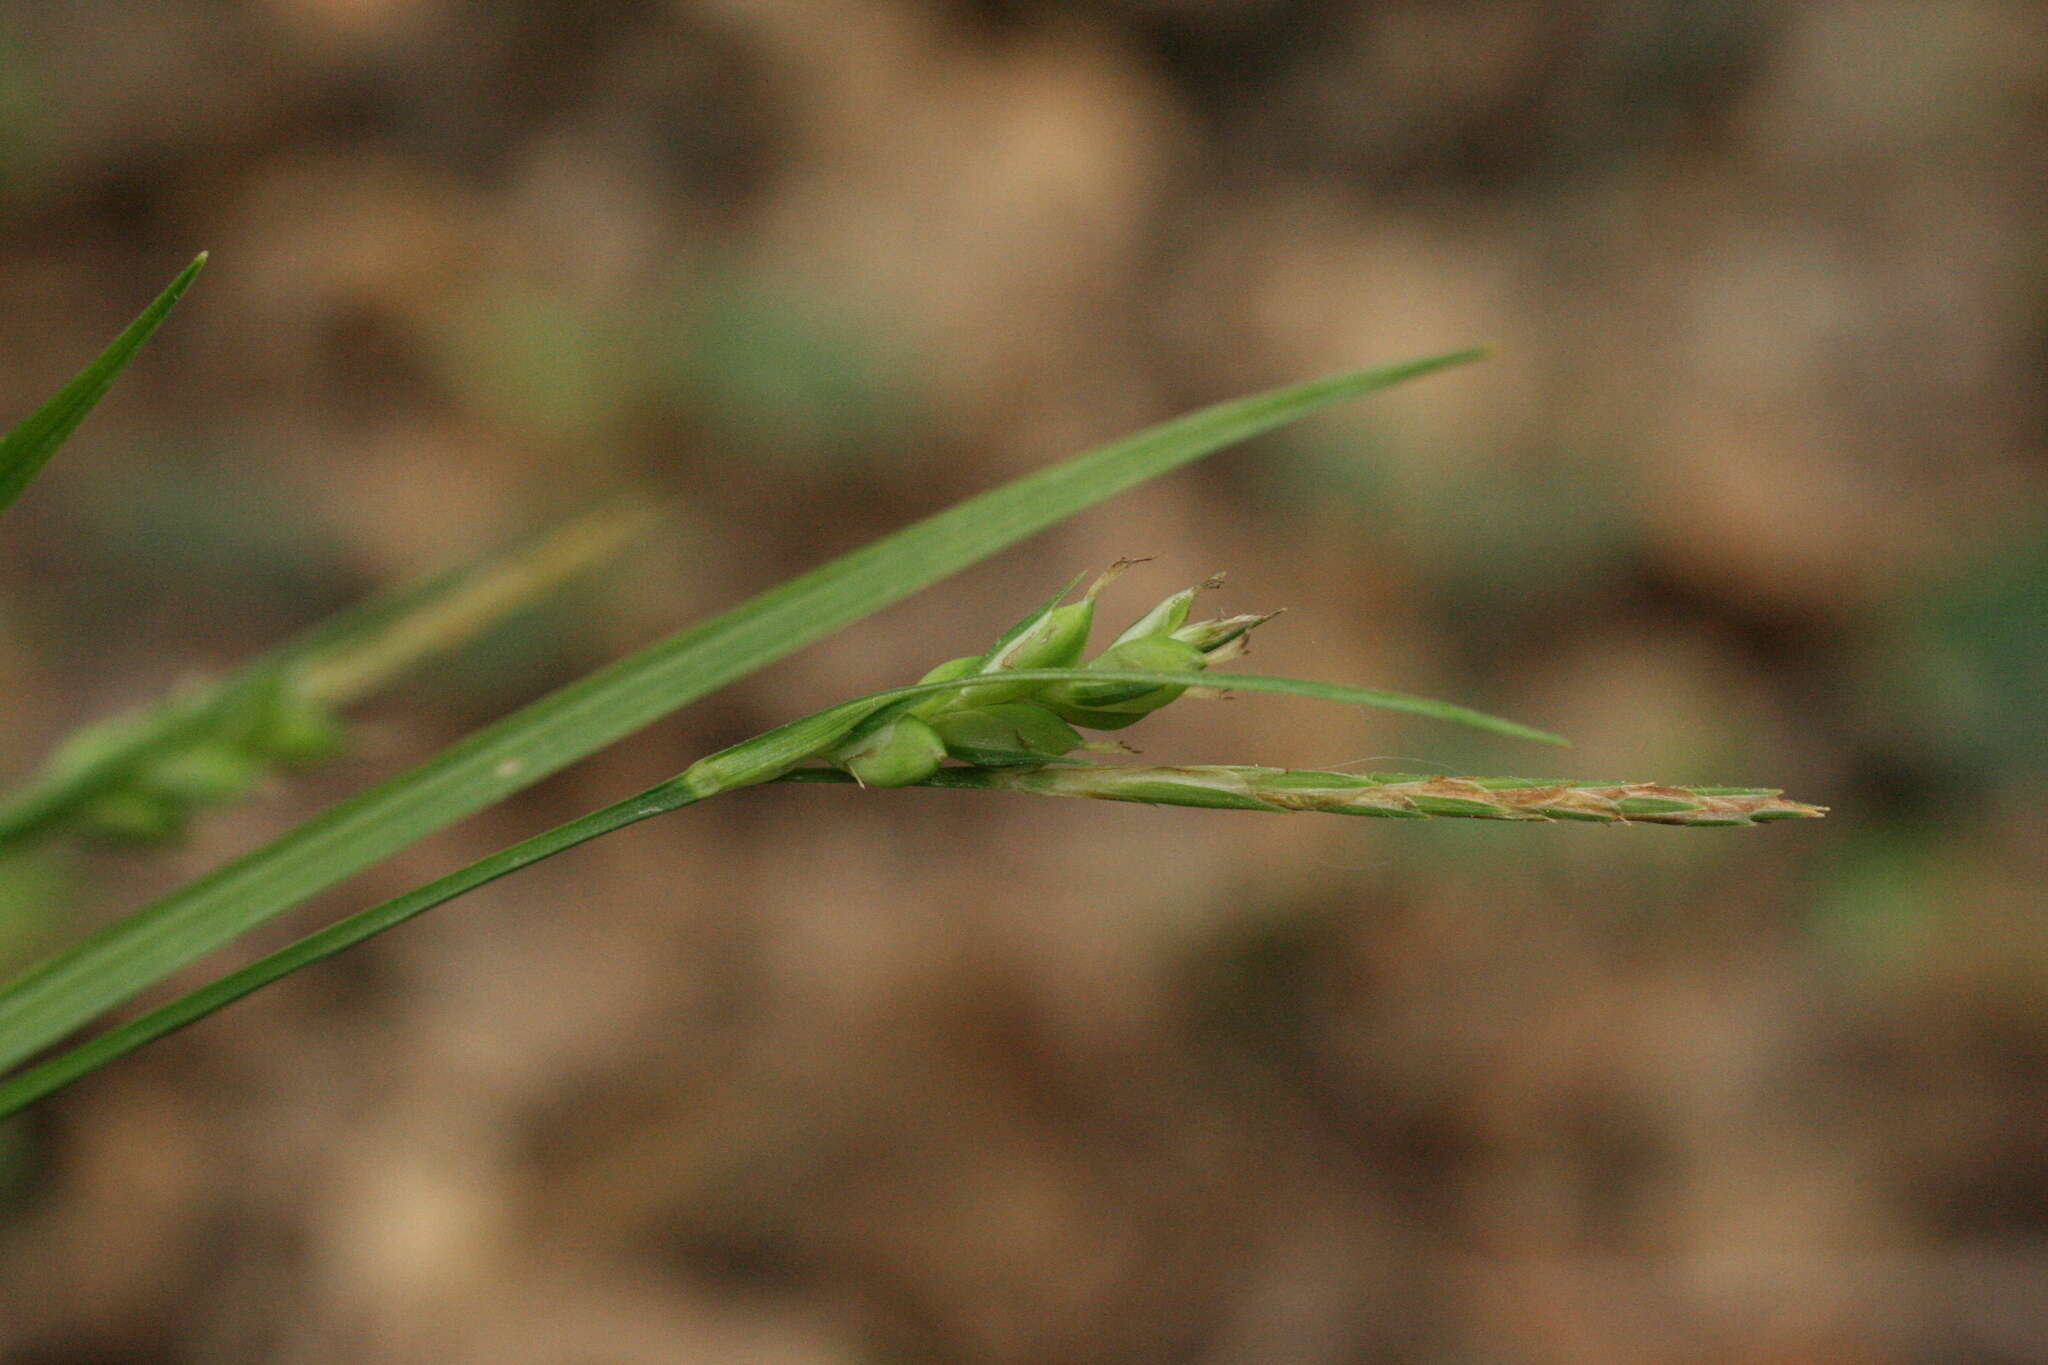 Image of Carex olbiensis Jord.